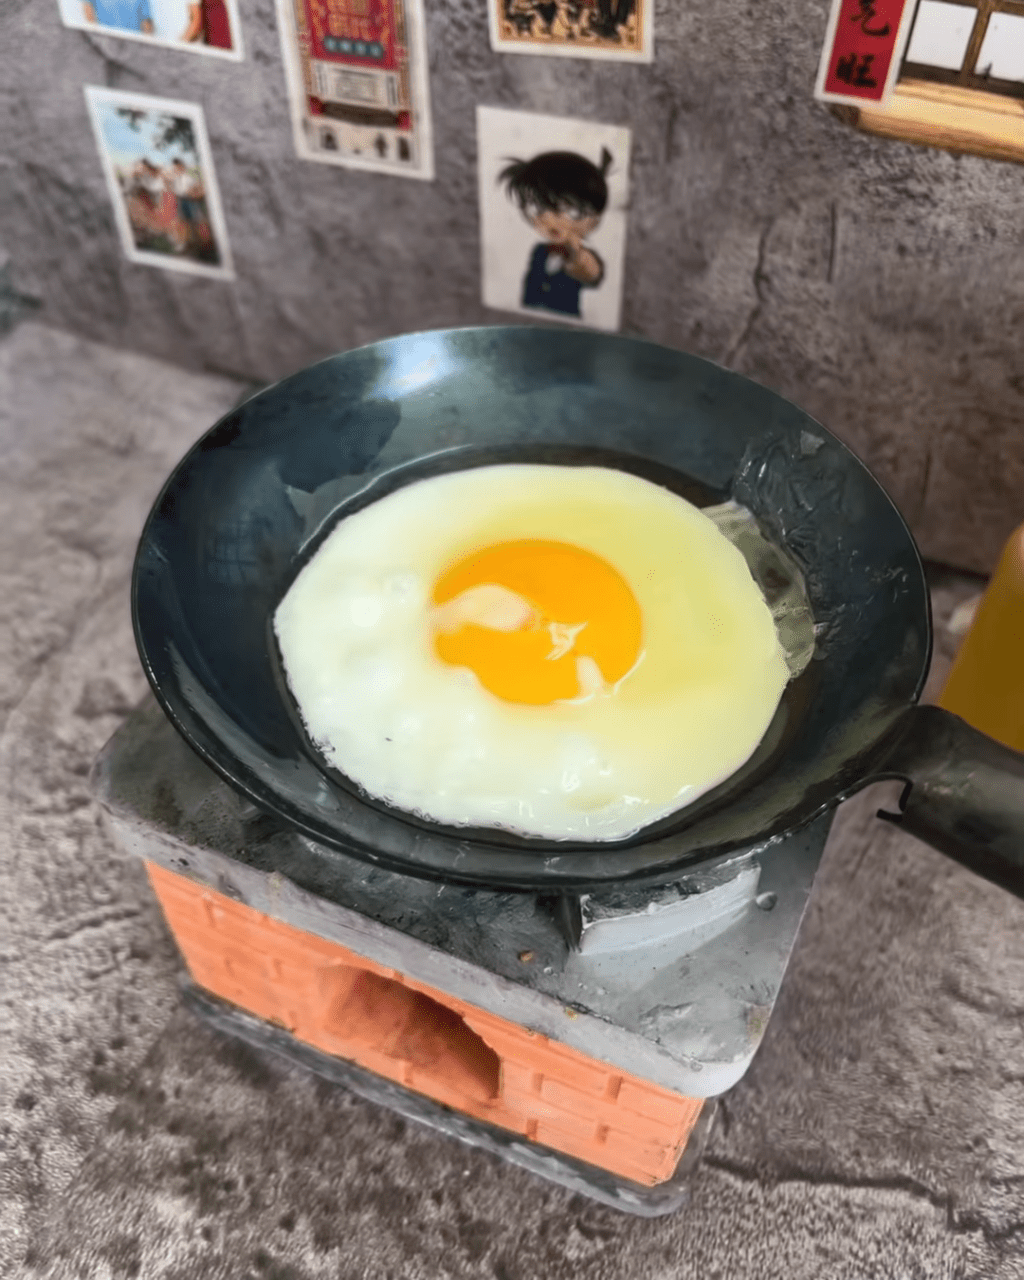 不过杨秀惠又晒囡囡首次下厨煮炮制的煎蛋。